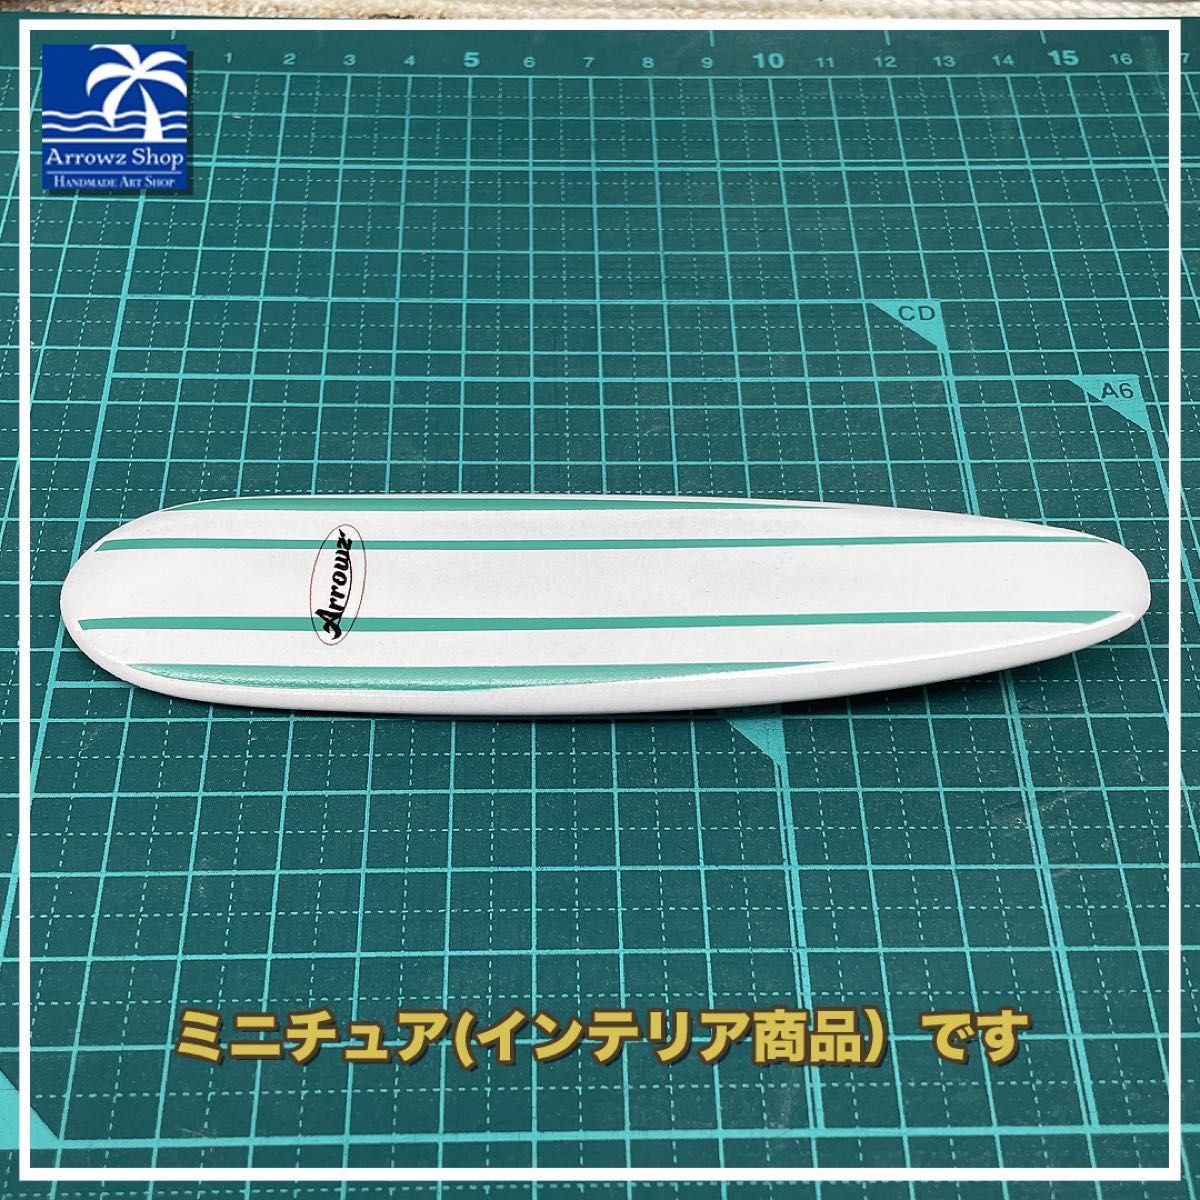 ロングボード09 【ミニチュアサーフボードシリーズ】 （インテリア雑貨）